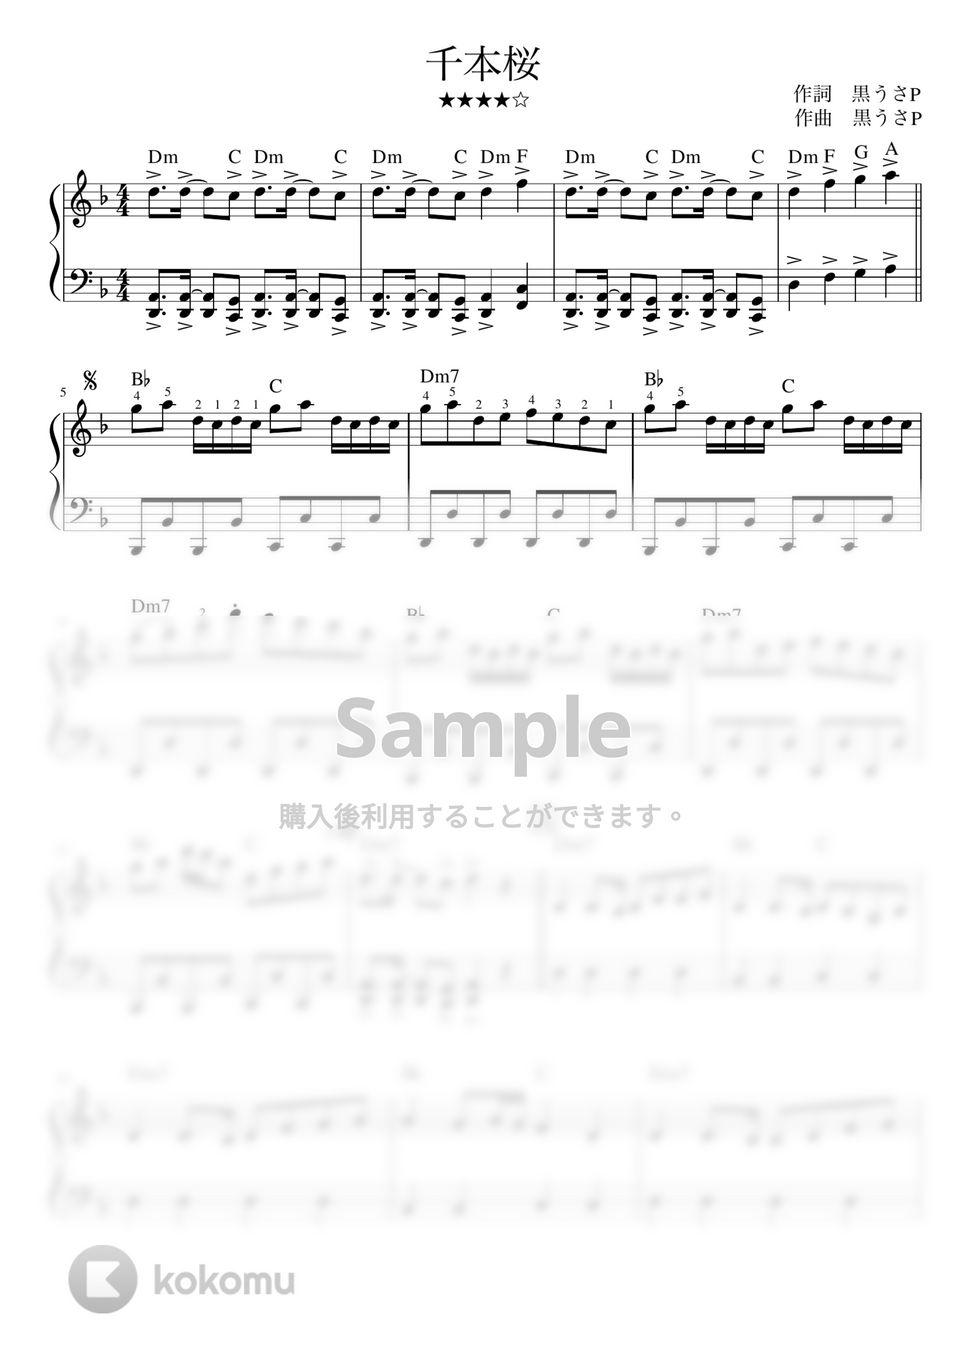 黒うさP - 千本桜 (ピアノソロ / 左手オクターブ) by orinpia music